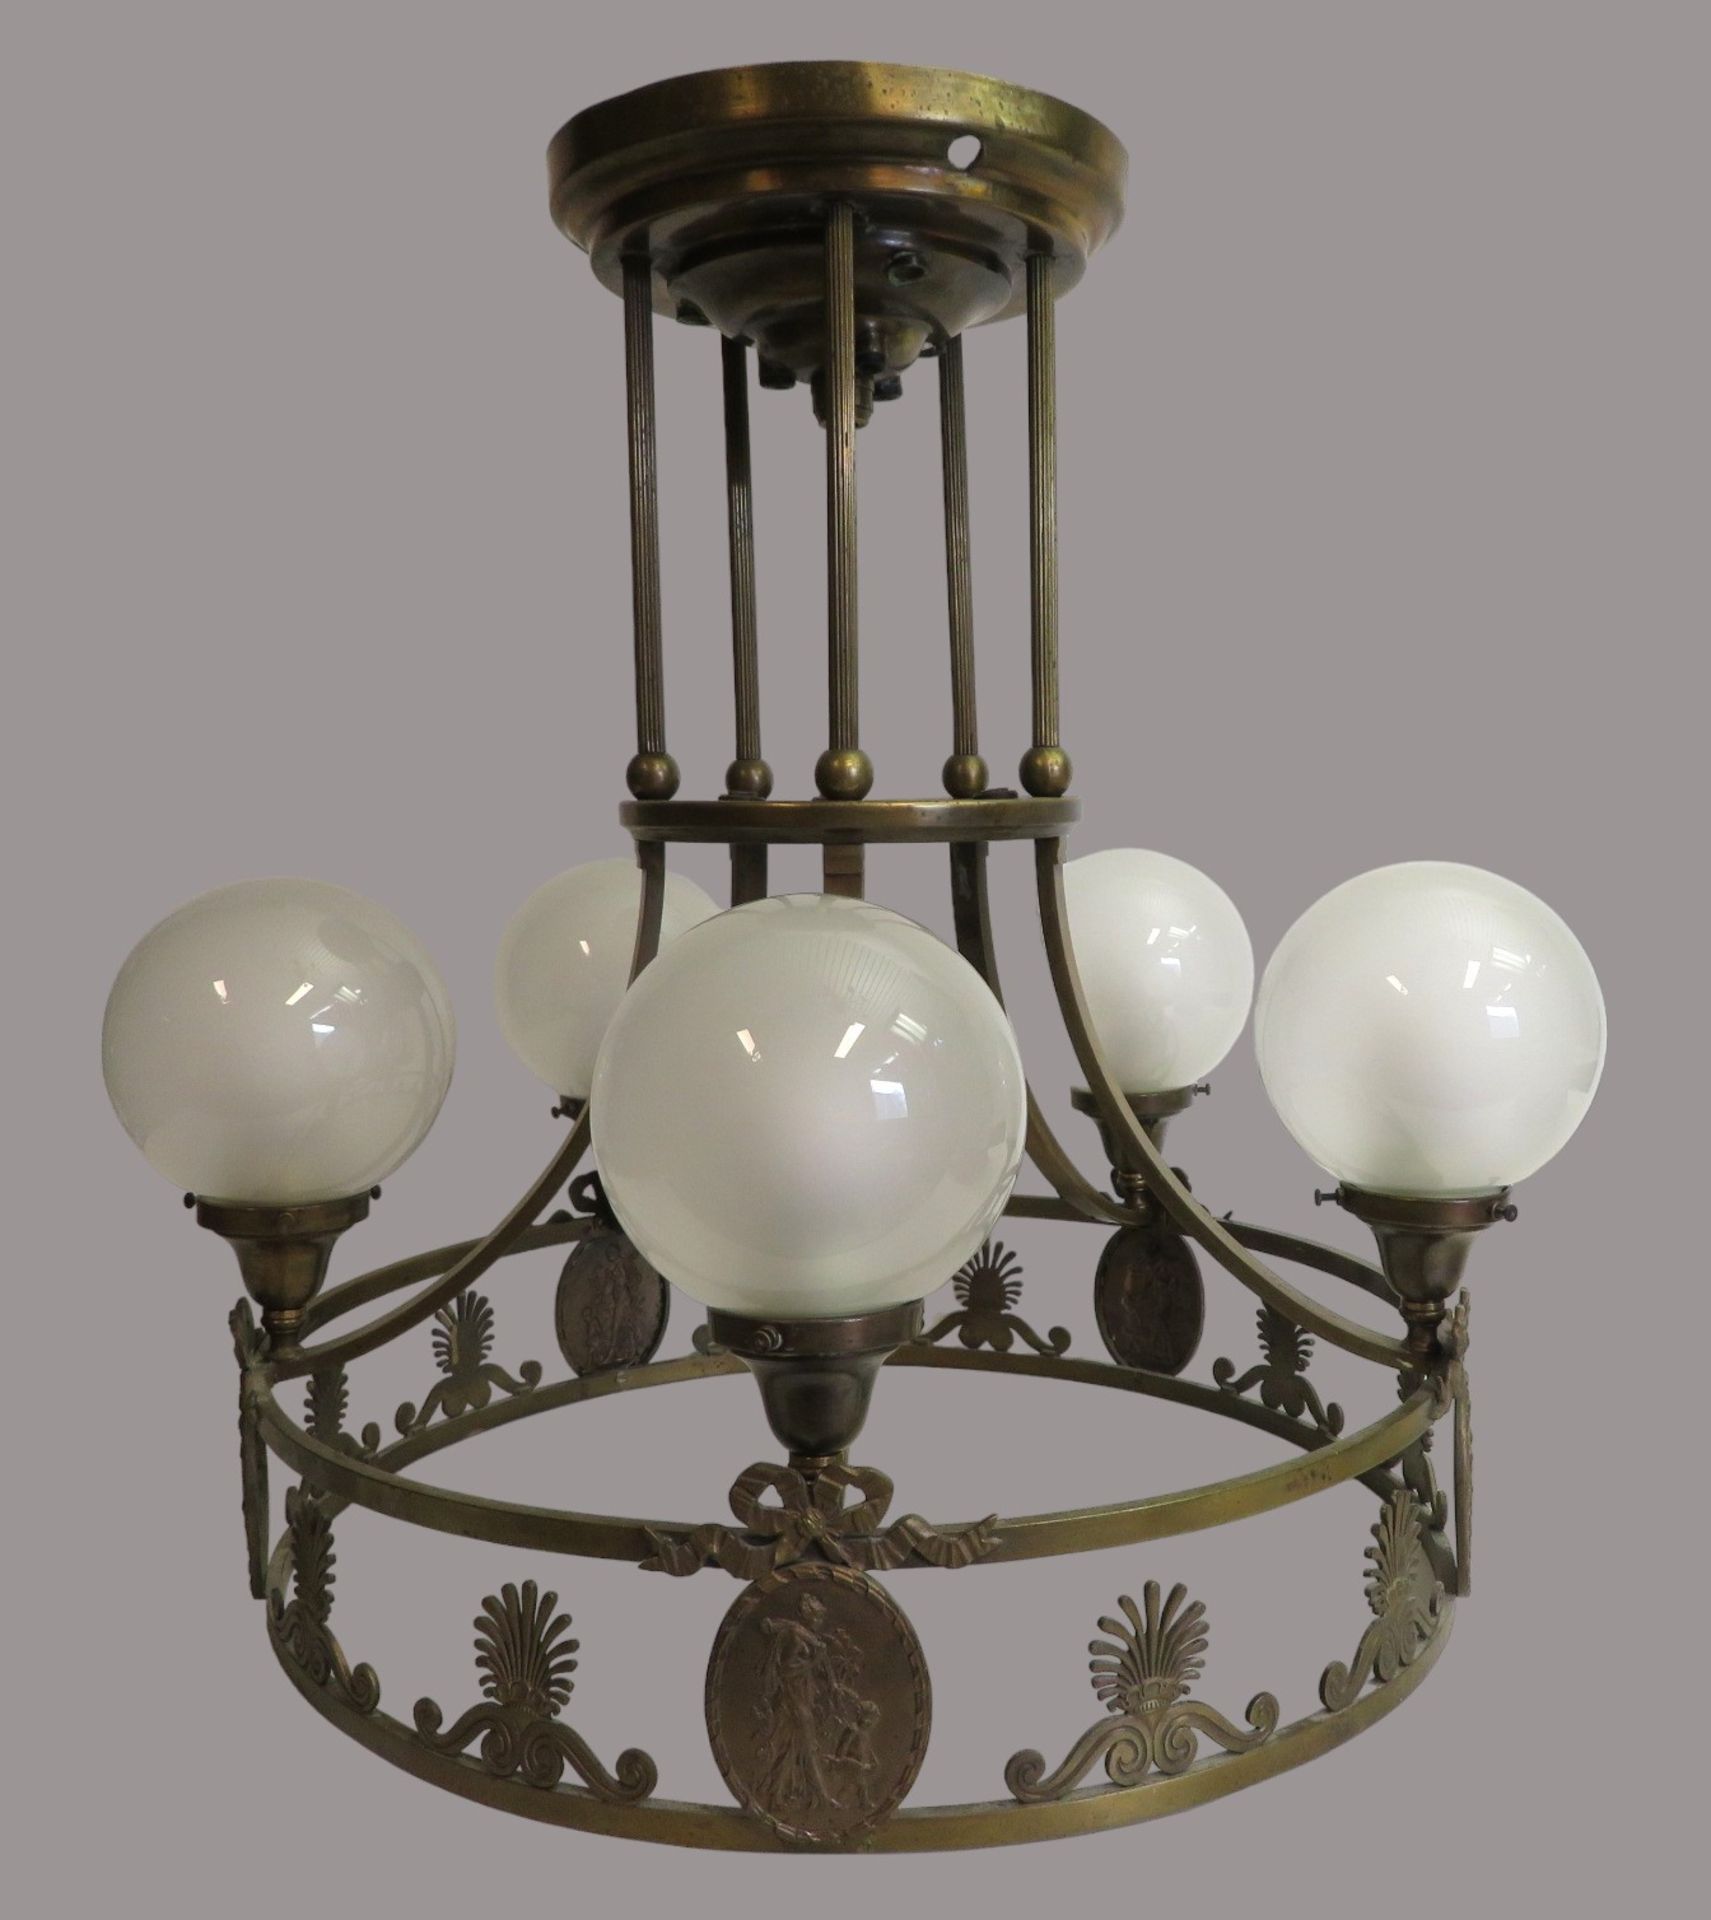 Hängelampe, um 1900, Messing durchbrochen gearbeitet, 5-flammig, versehen mit Glaskugeln, h 60 cm, 